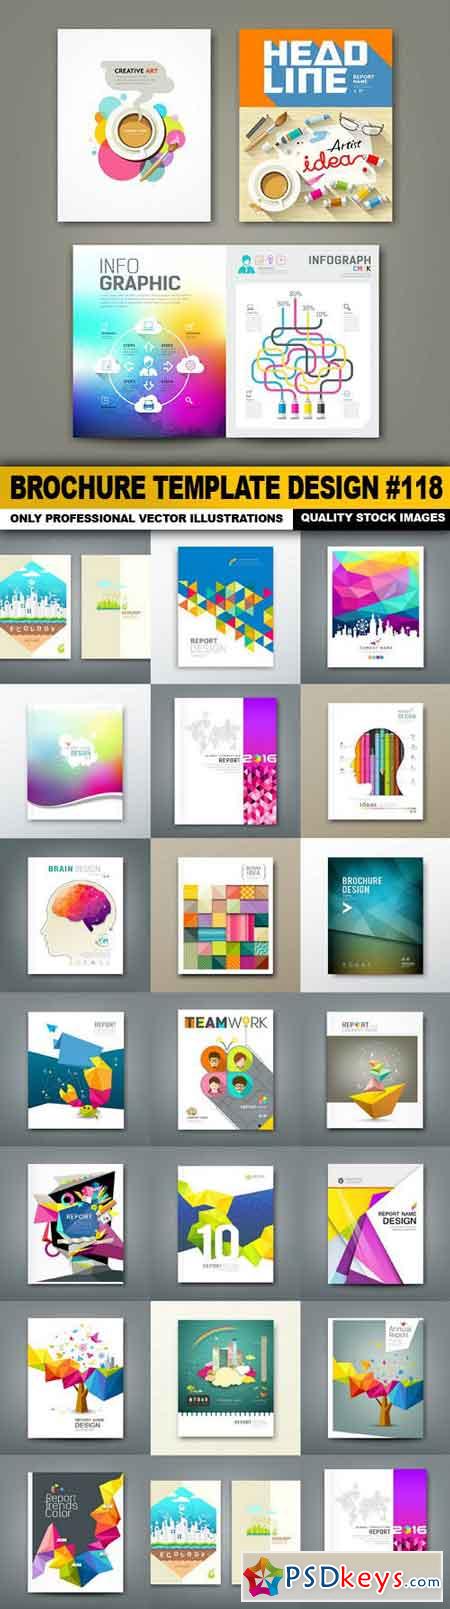 Brochure Template Design #118 - 20 Vector